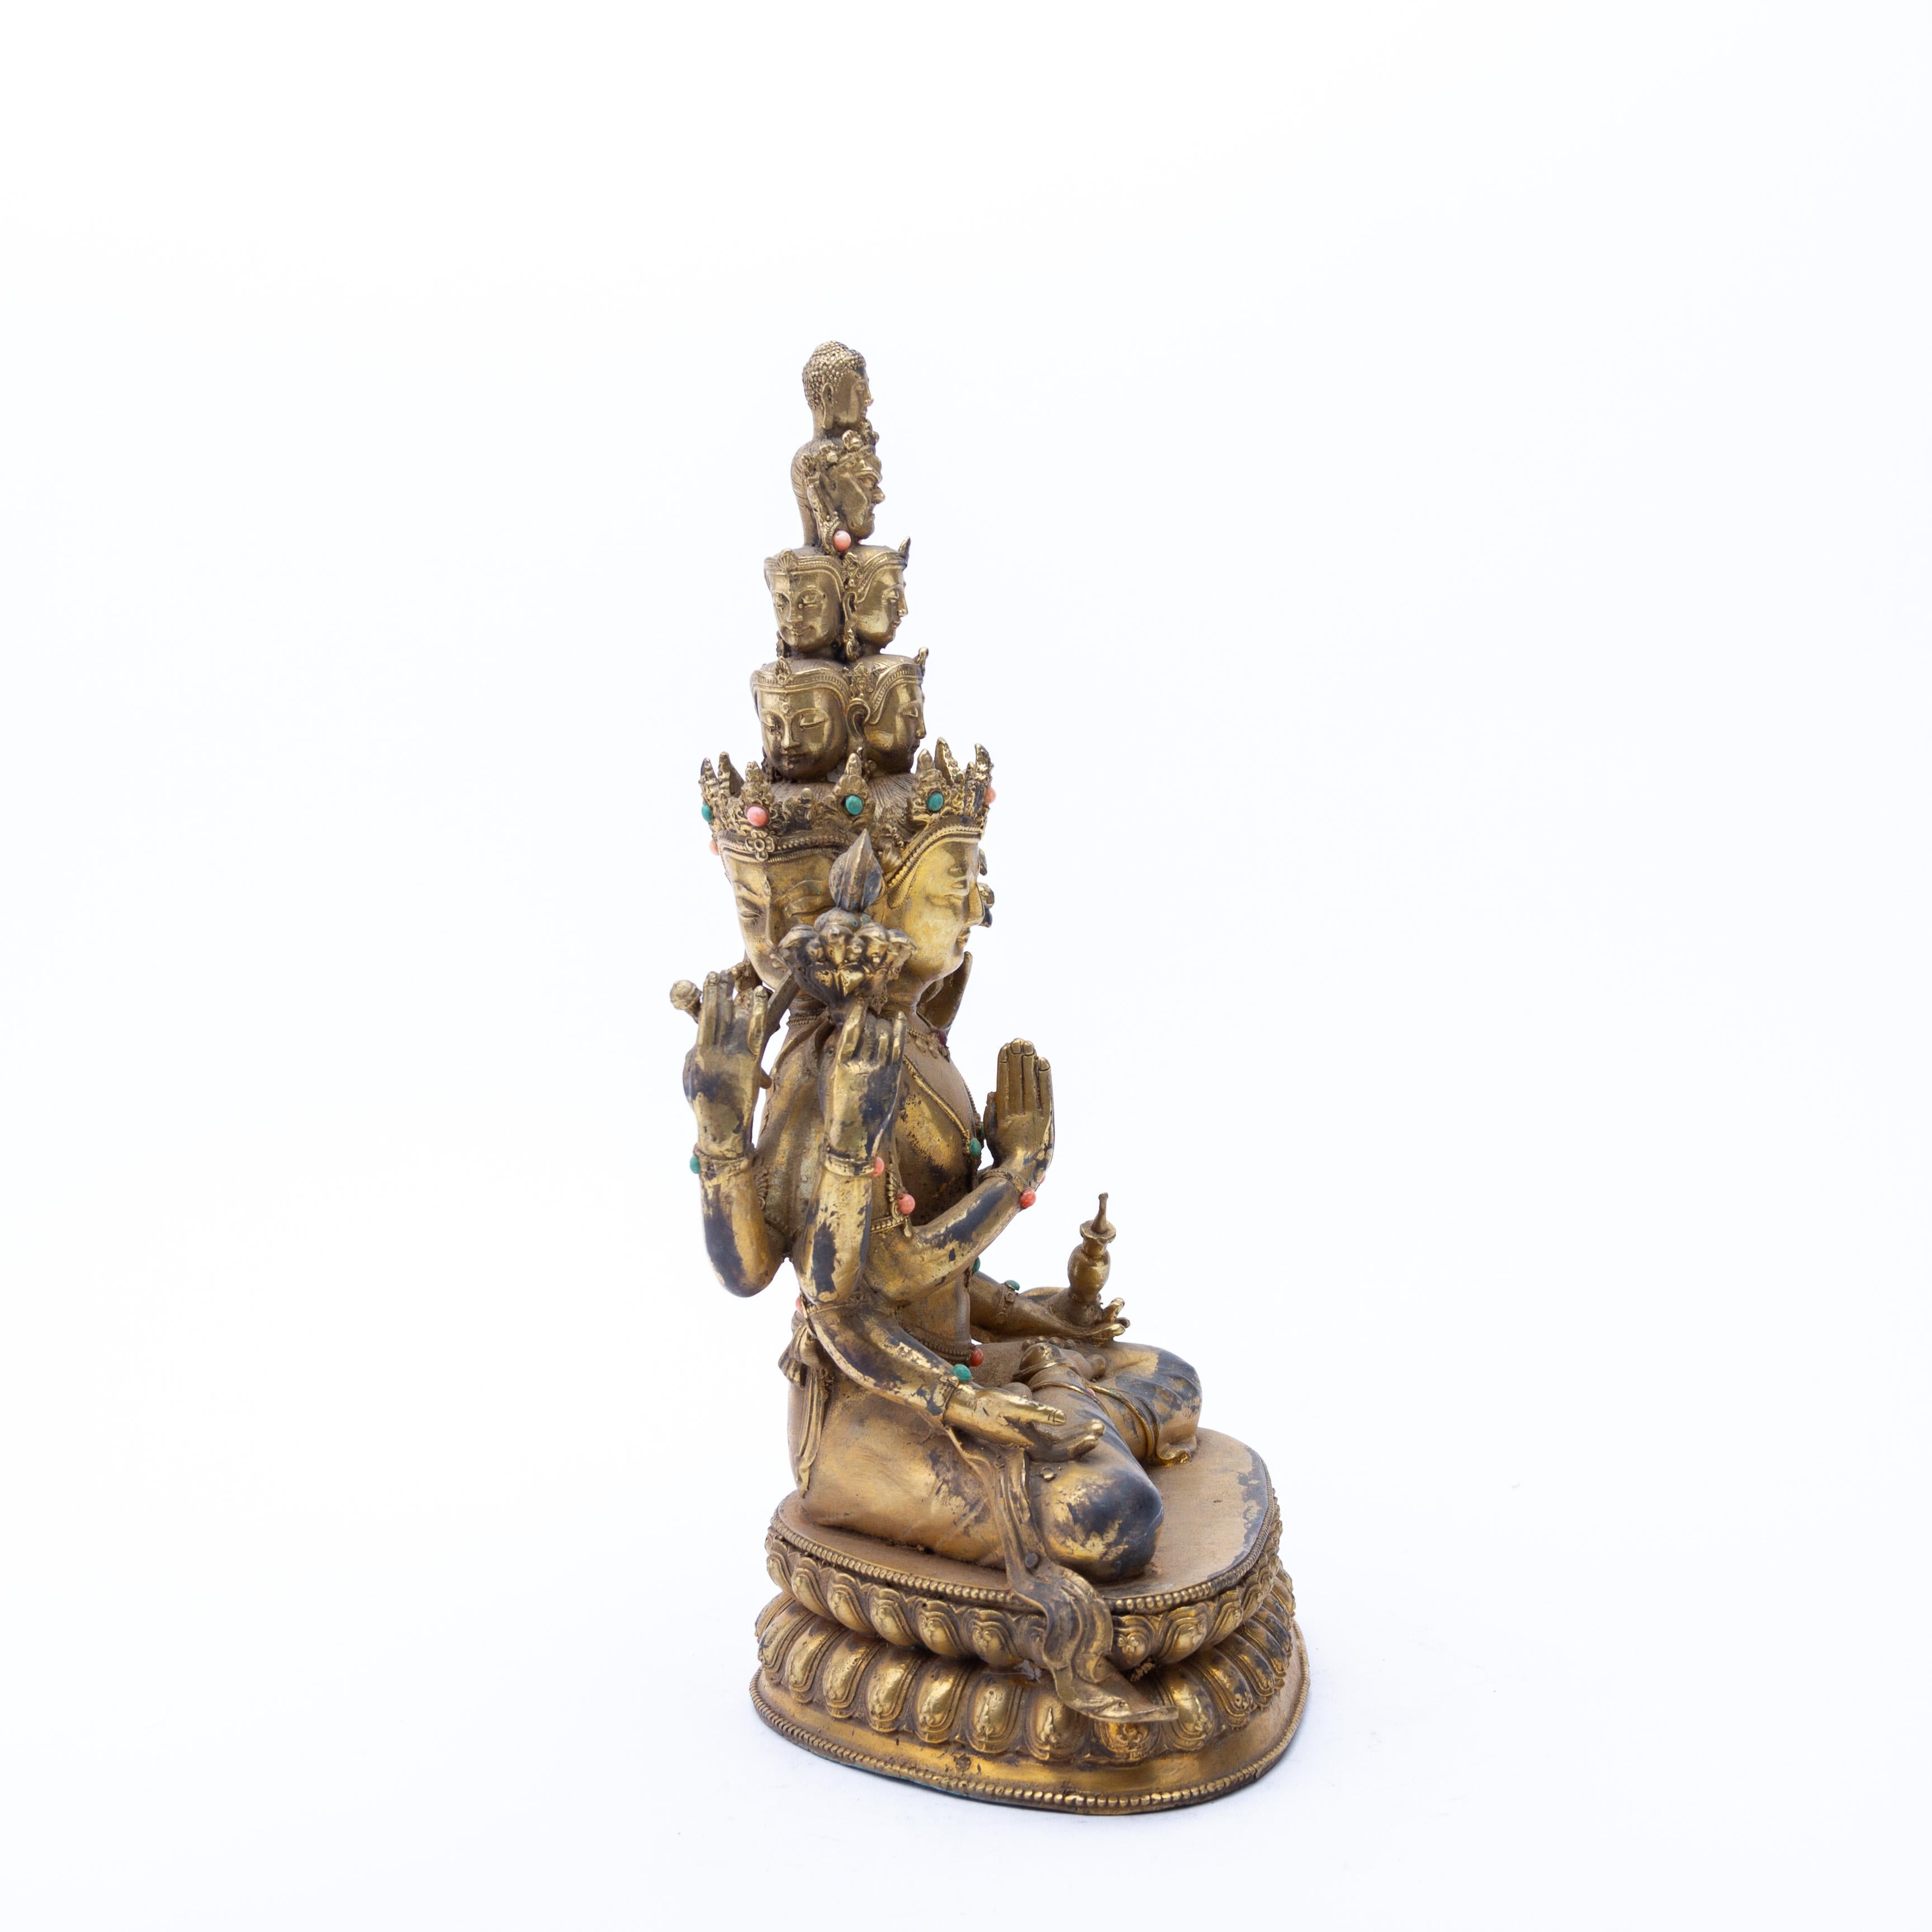 Tibetische vergoldete Bronze hinduistische buddhistische Skulptur von Guanyin Bodhisattva Ende 19.
Guter Zustand
Kostenloser internationaler Versand.